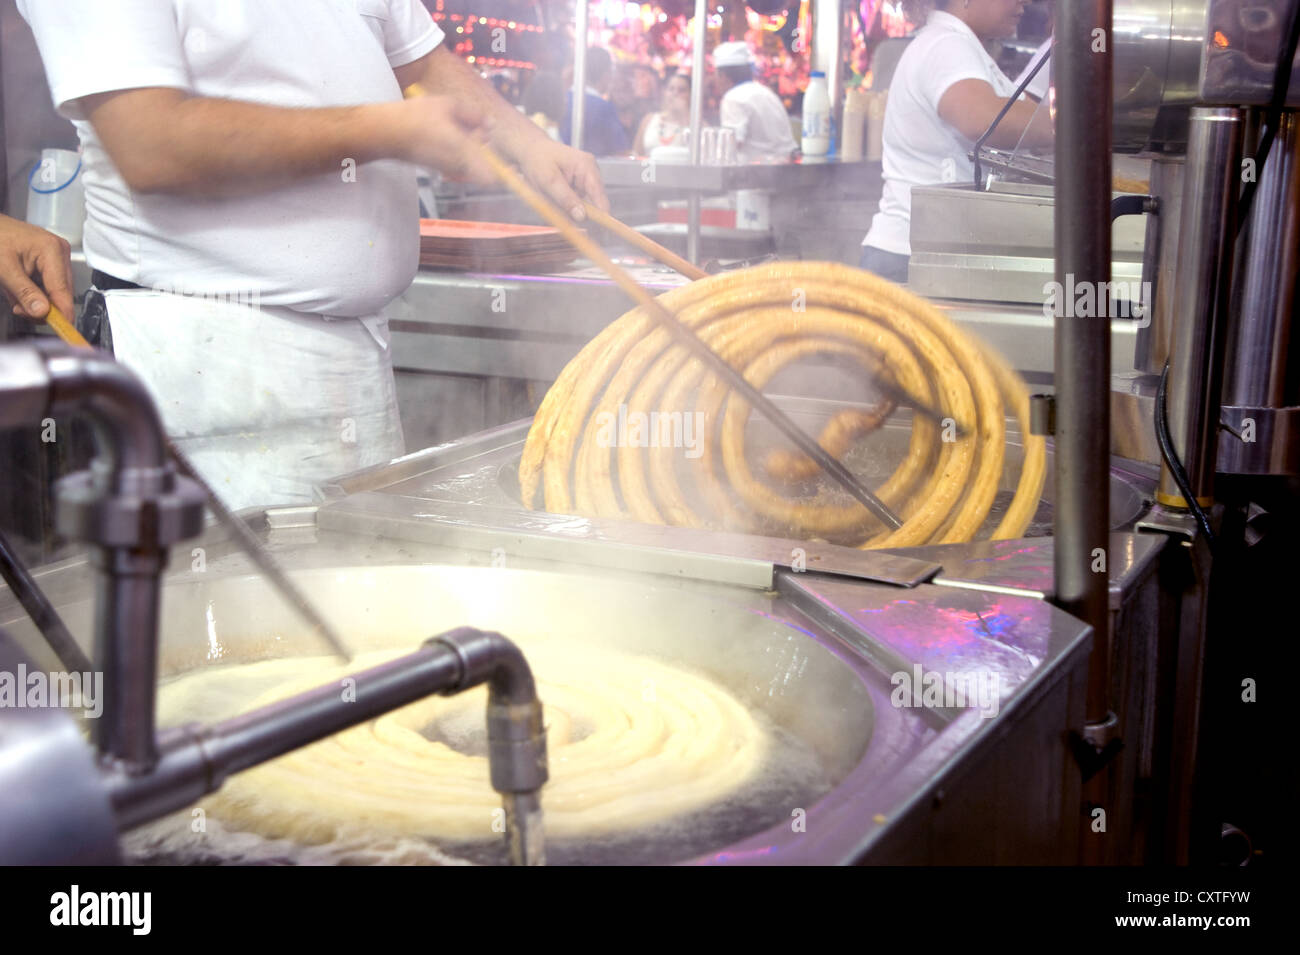 Churro Anbieter im Maria Del Mar Festival in Almeria, Spanien, Frittieren und den Verkauf der Spanische Delikatesse churros, auch als Spanische donuts bekannt. Stockfoto